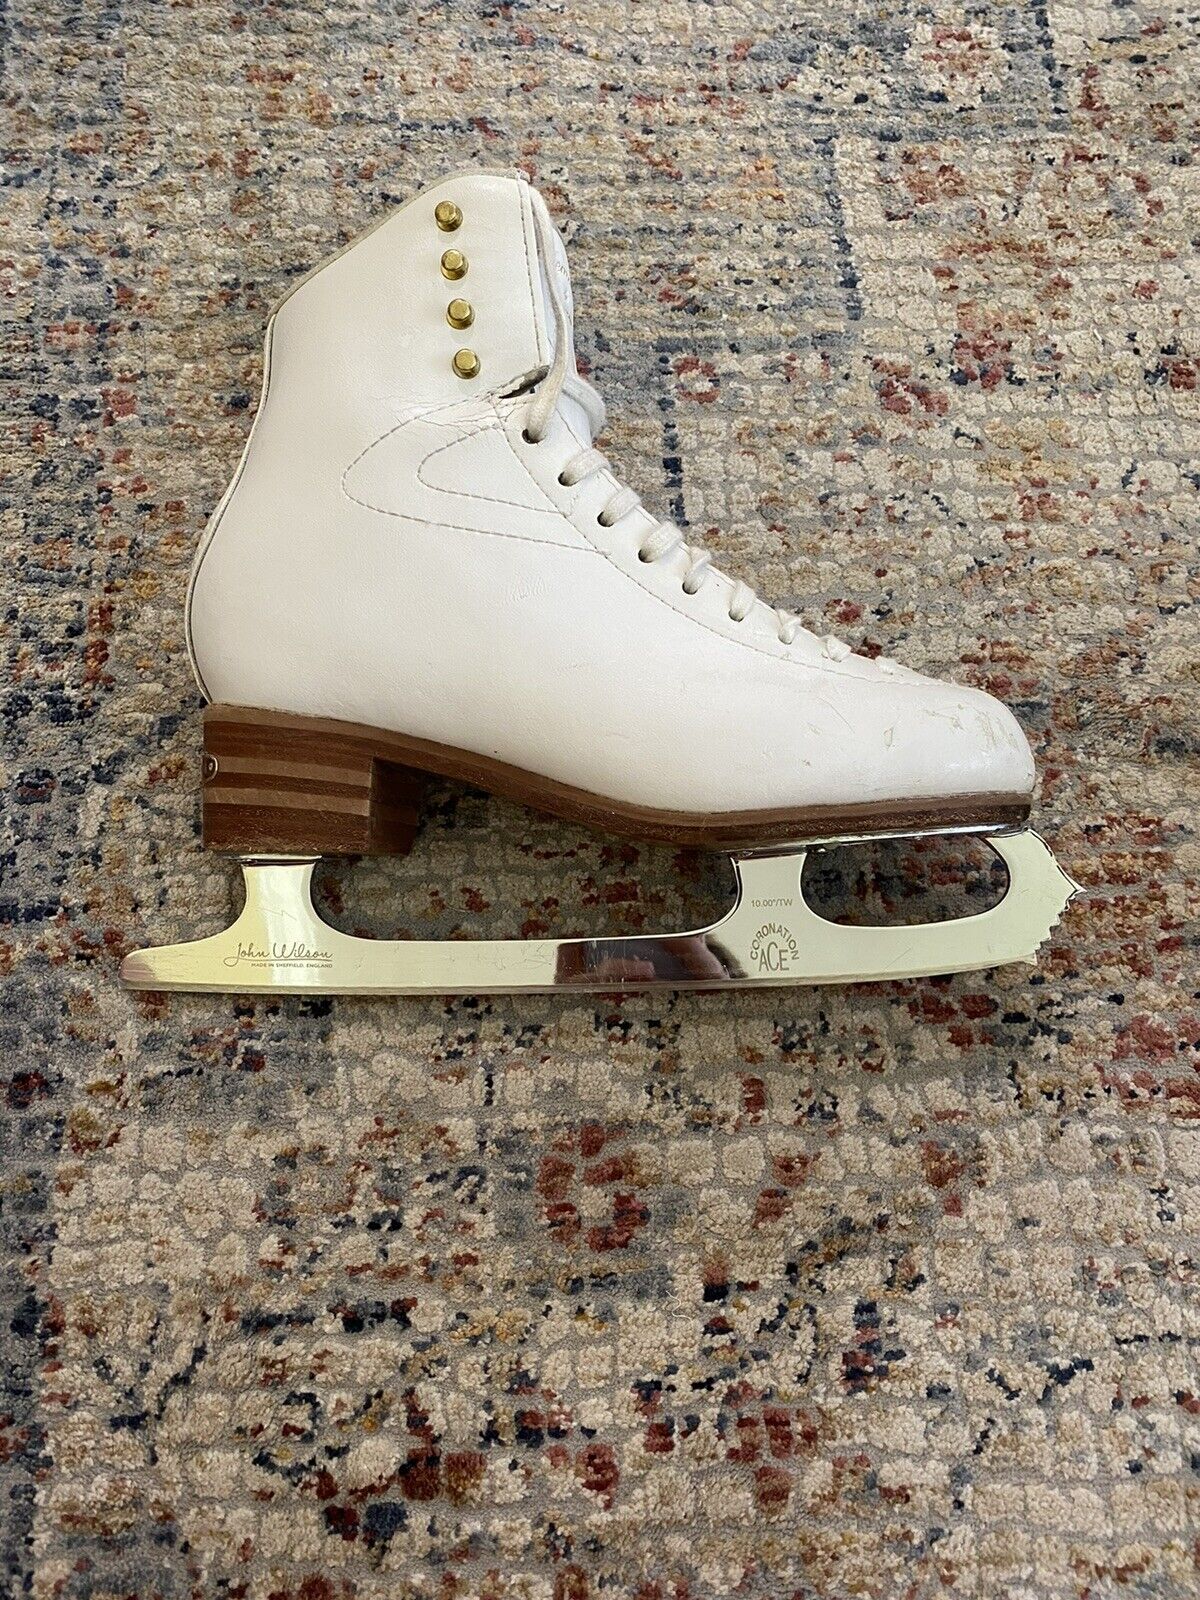 JACKSON ジャクソンプレミア フィギュアスケート靴71/2J - その他